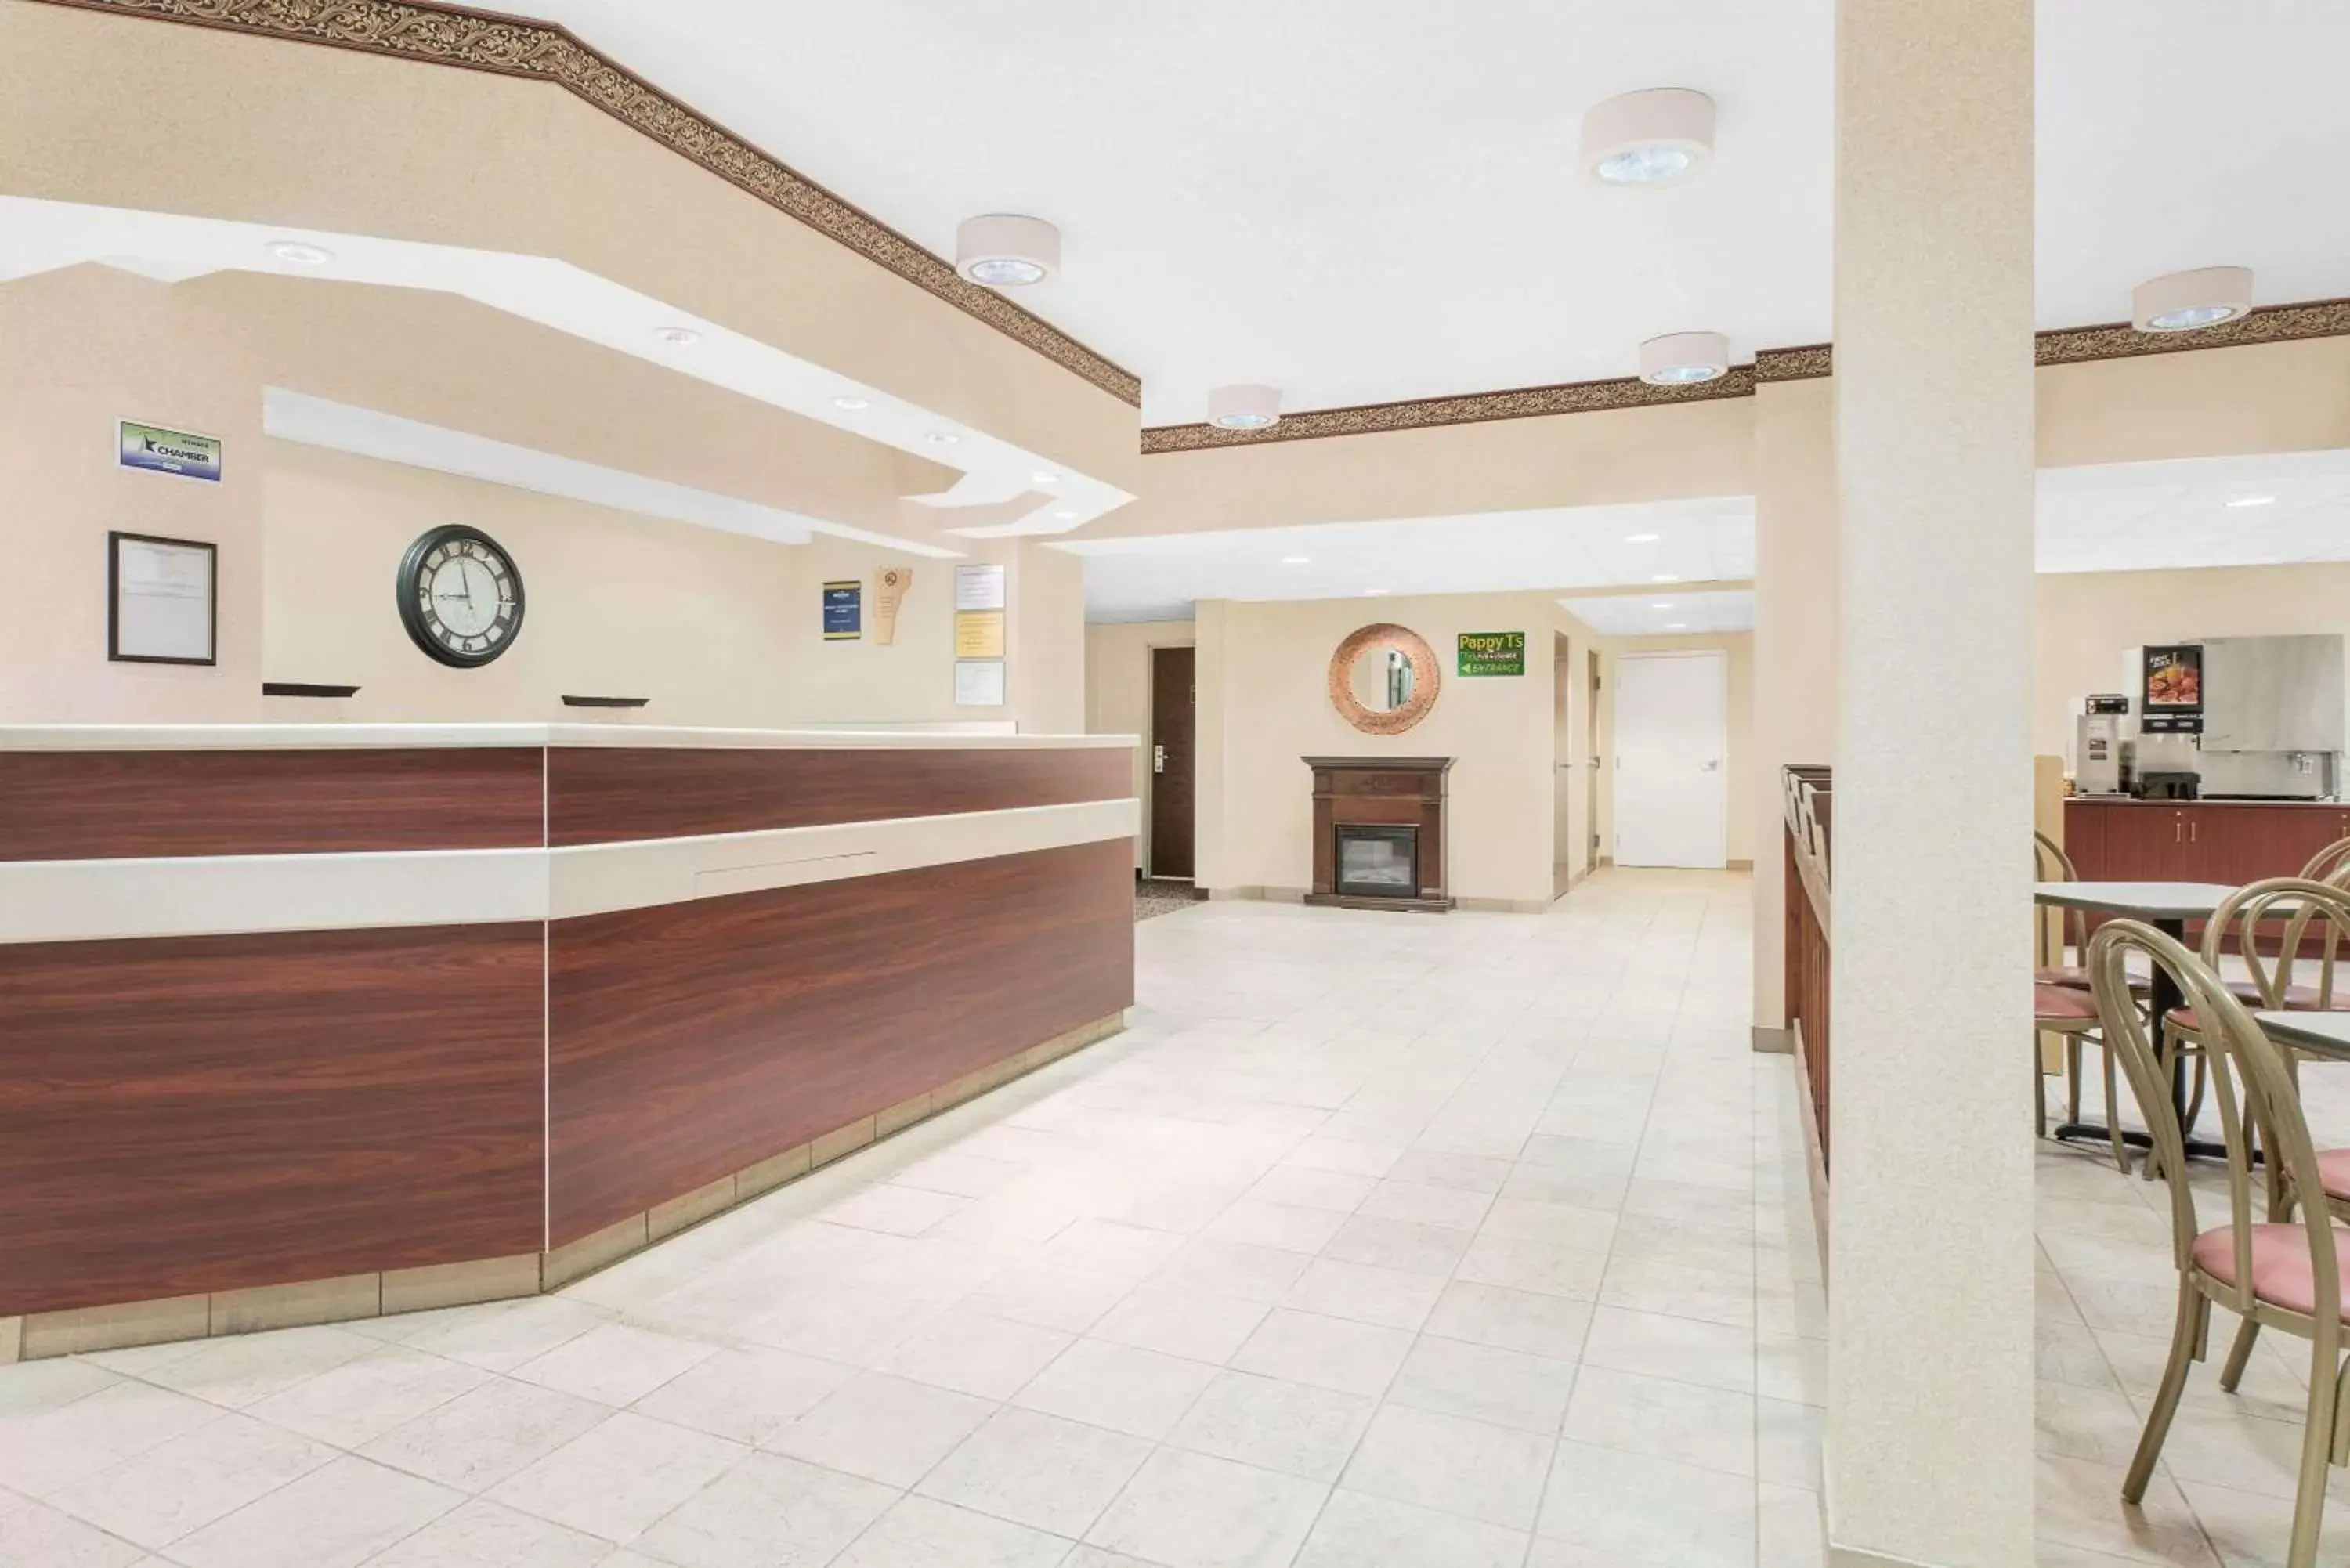 Lobby or reception, Lobby/Reception in Microtel Inn & Suites by Wyndham Hamburg